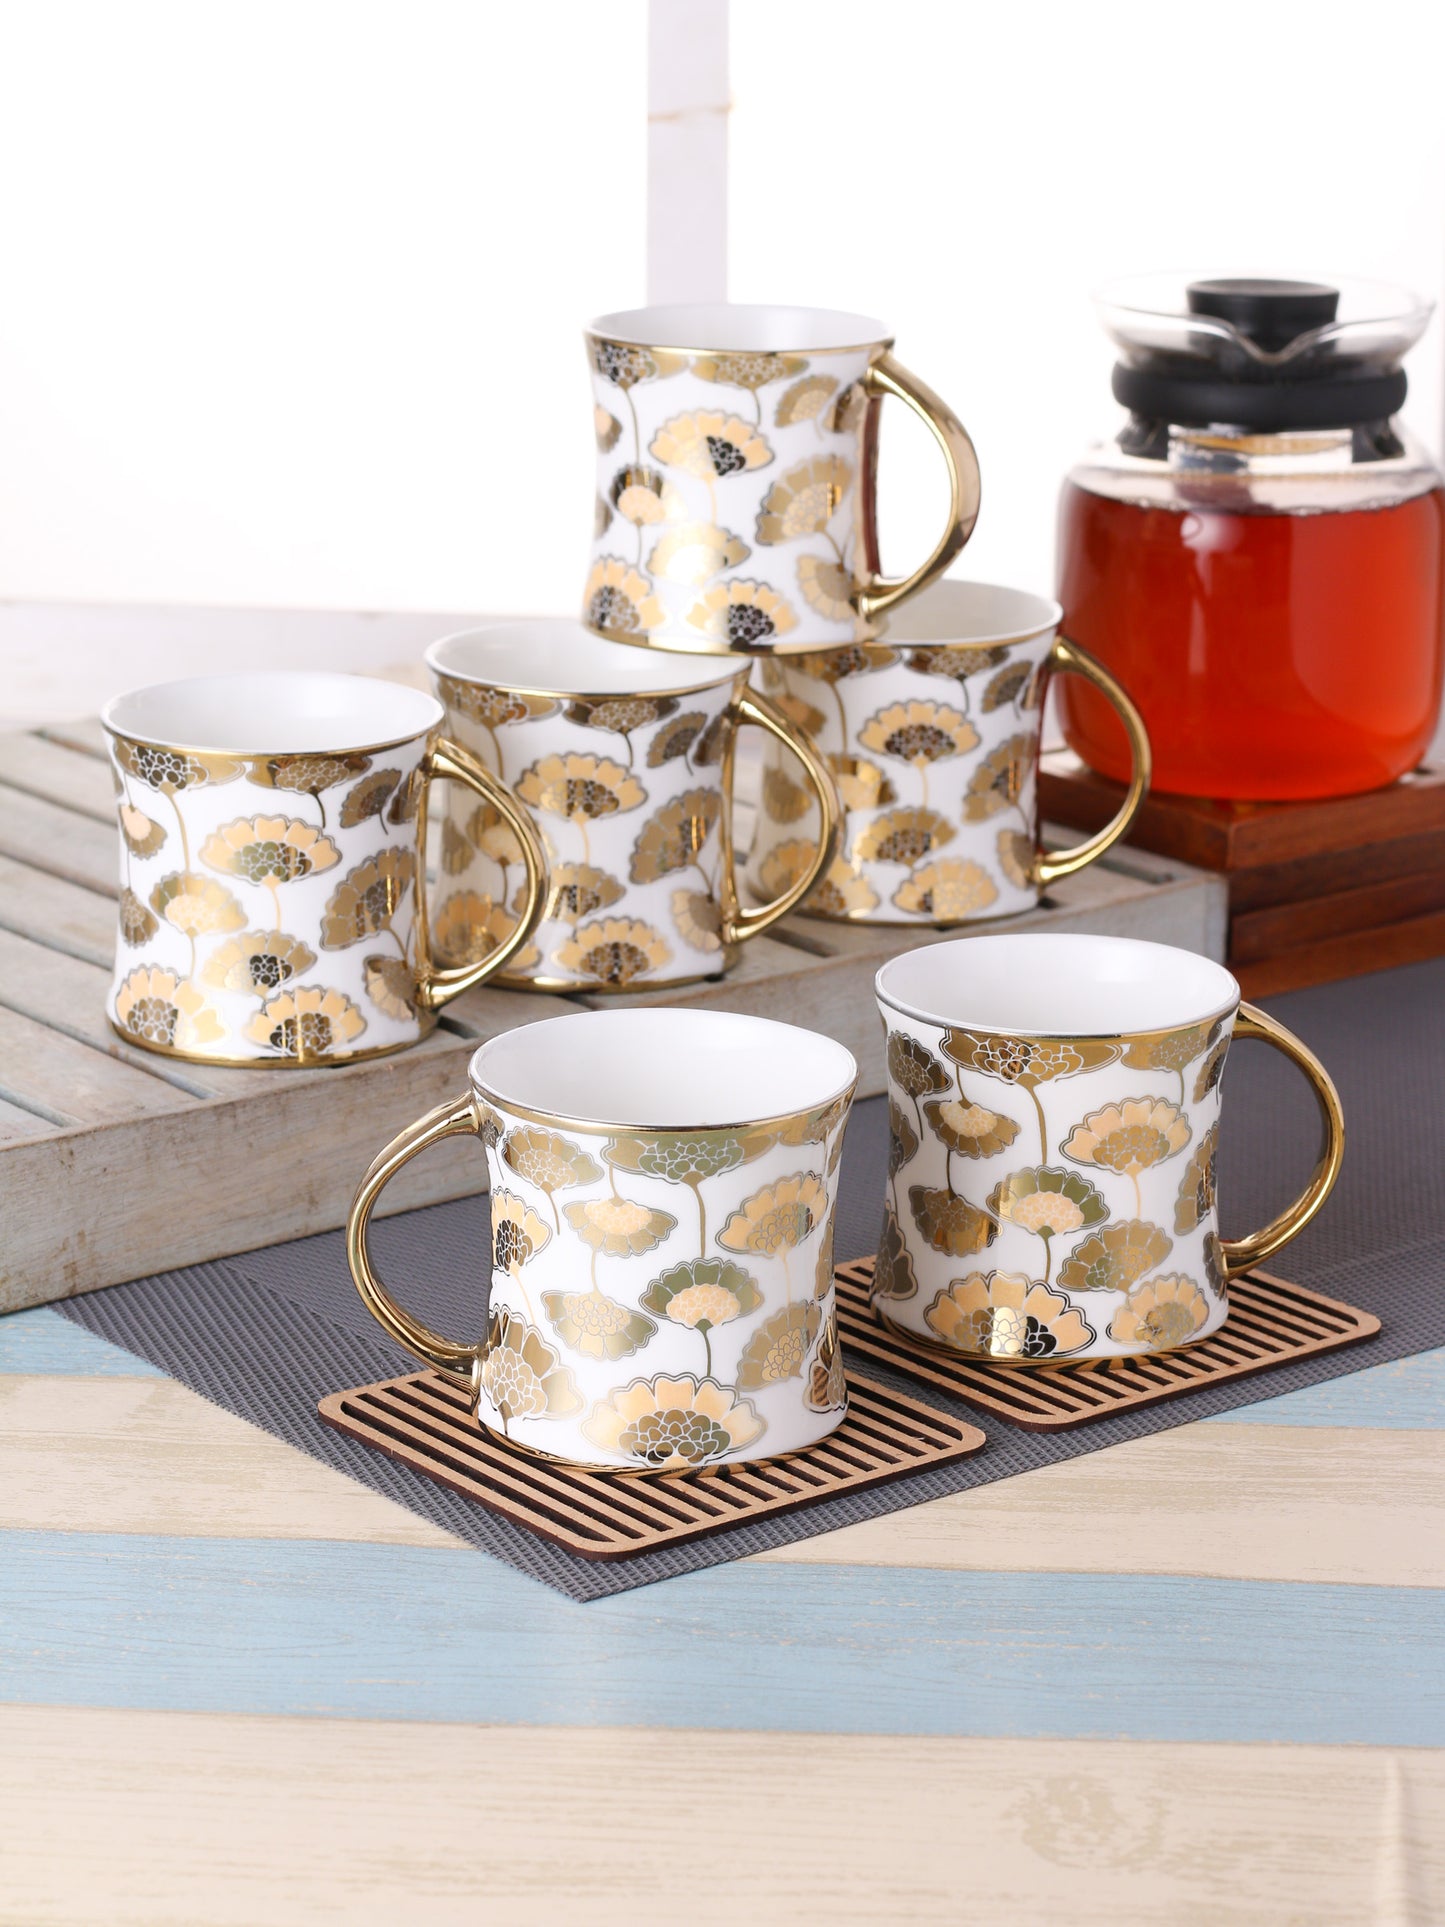 Diamond Ebony Coffee & Tea Mugs, 170ml, Set of 6 (E680) - Clay Craft India